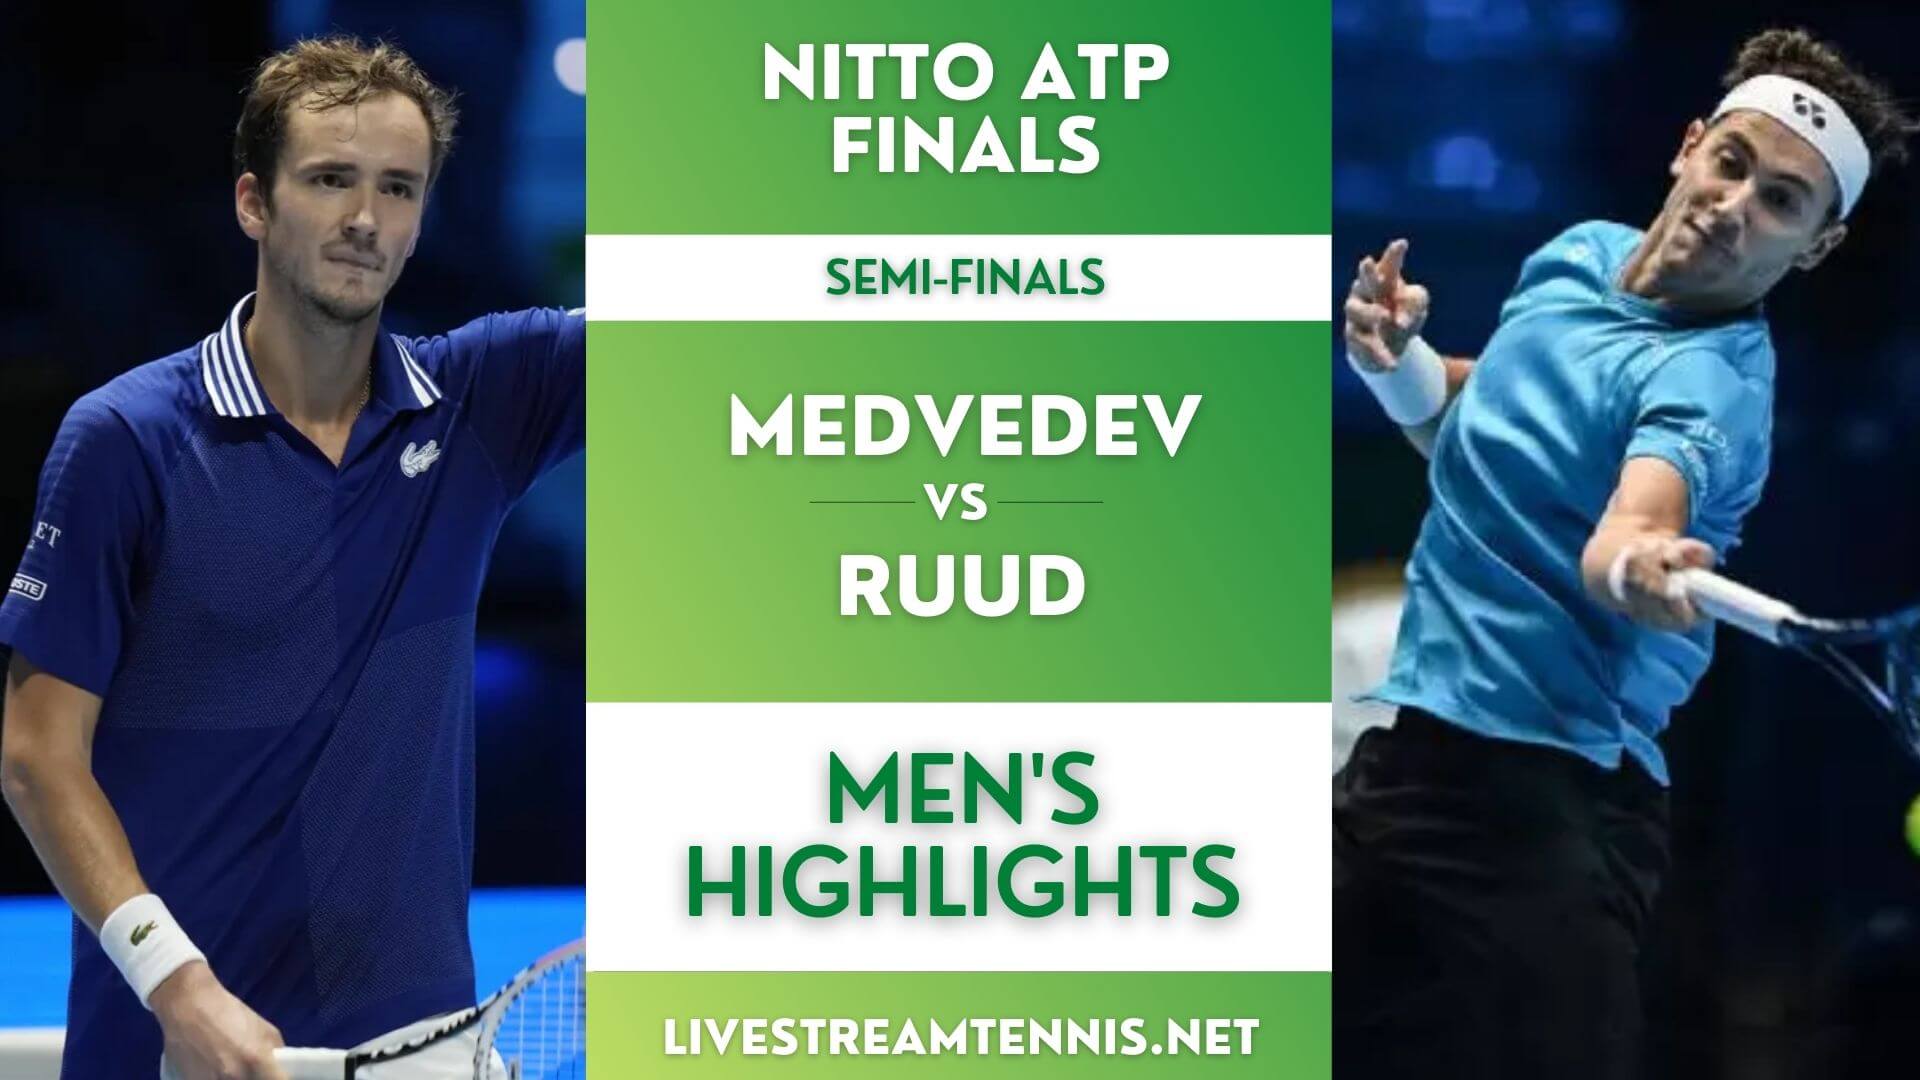 Nitto ATP Finals Semi Final 1 Highlights 2021